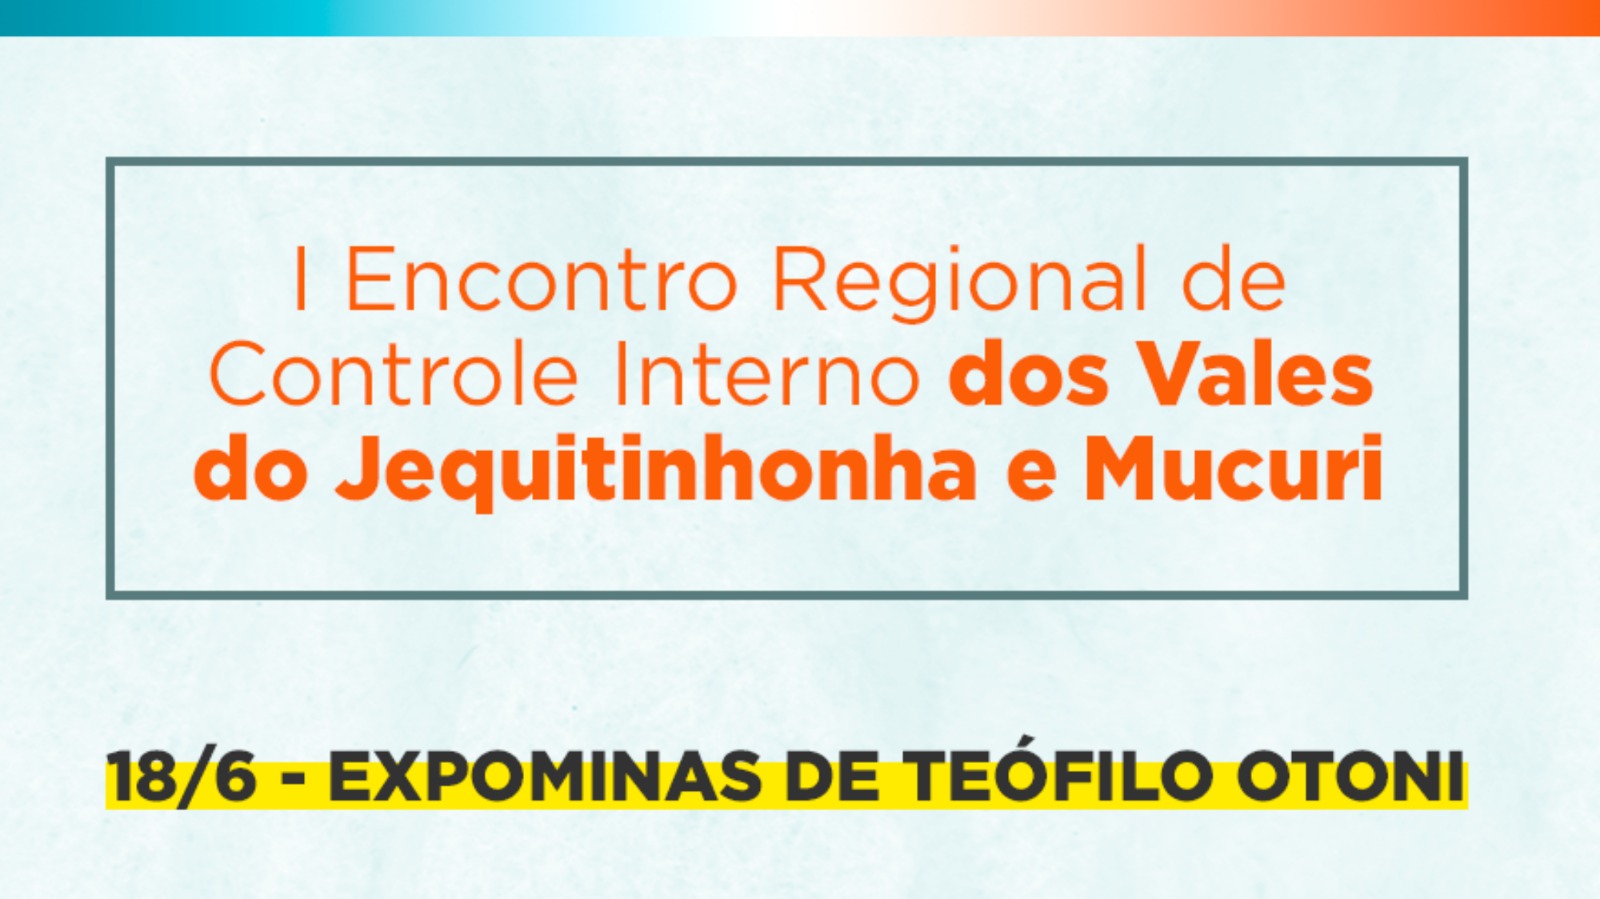 Estão abertas as inscrições para o 1º Encontro Regional de Controle Interno dos Vales do Jequitinhonha e Mucuri